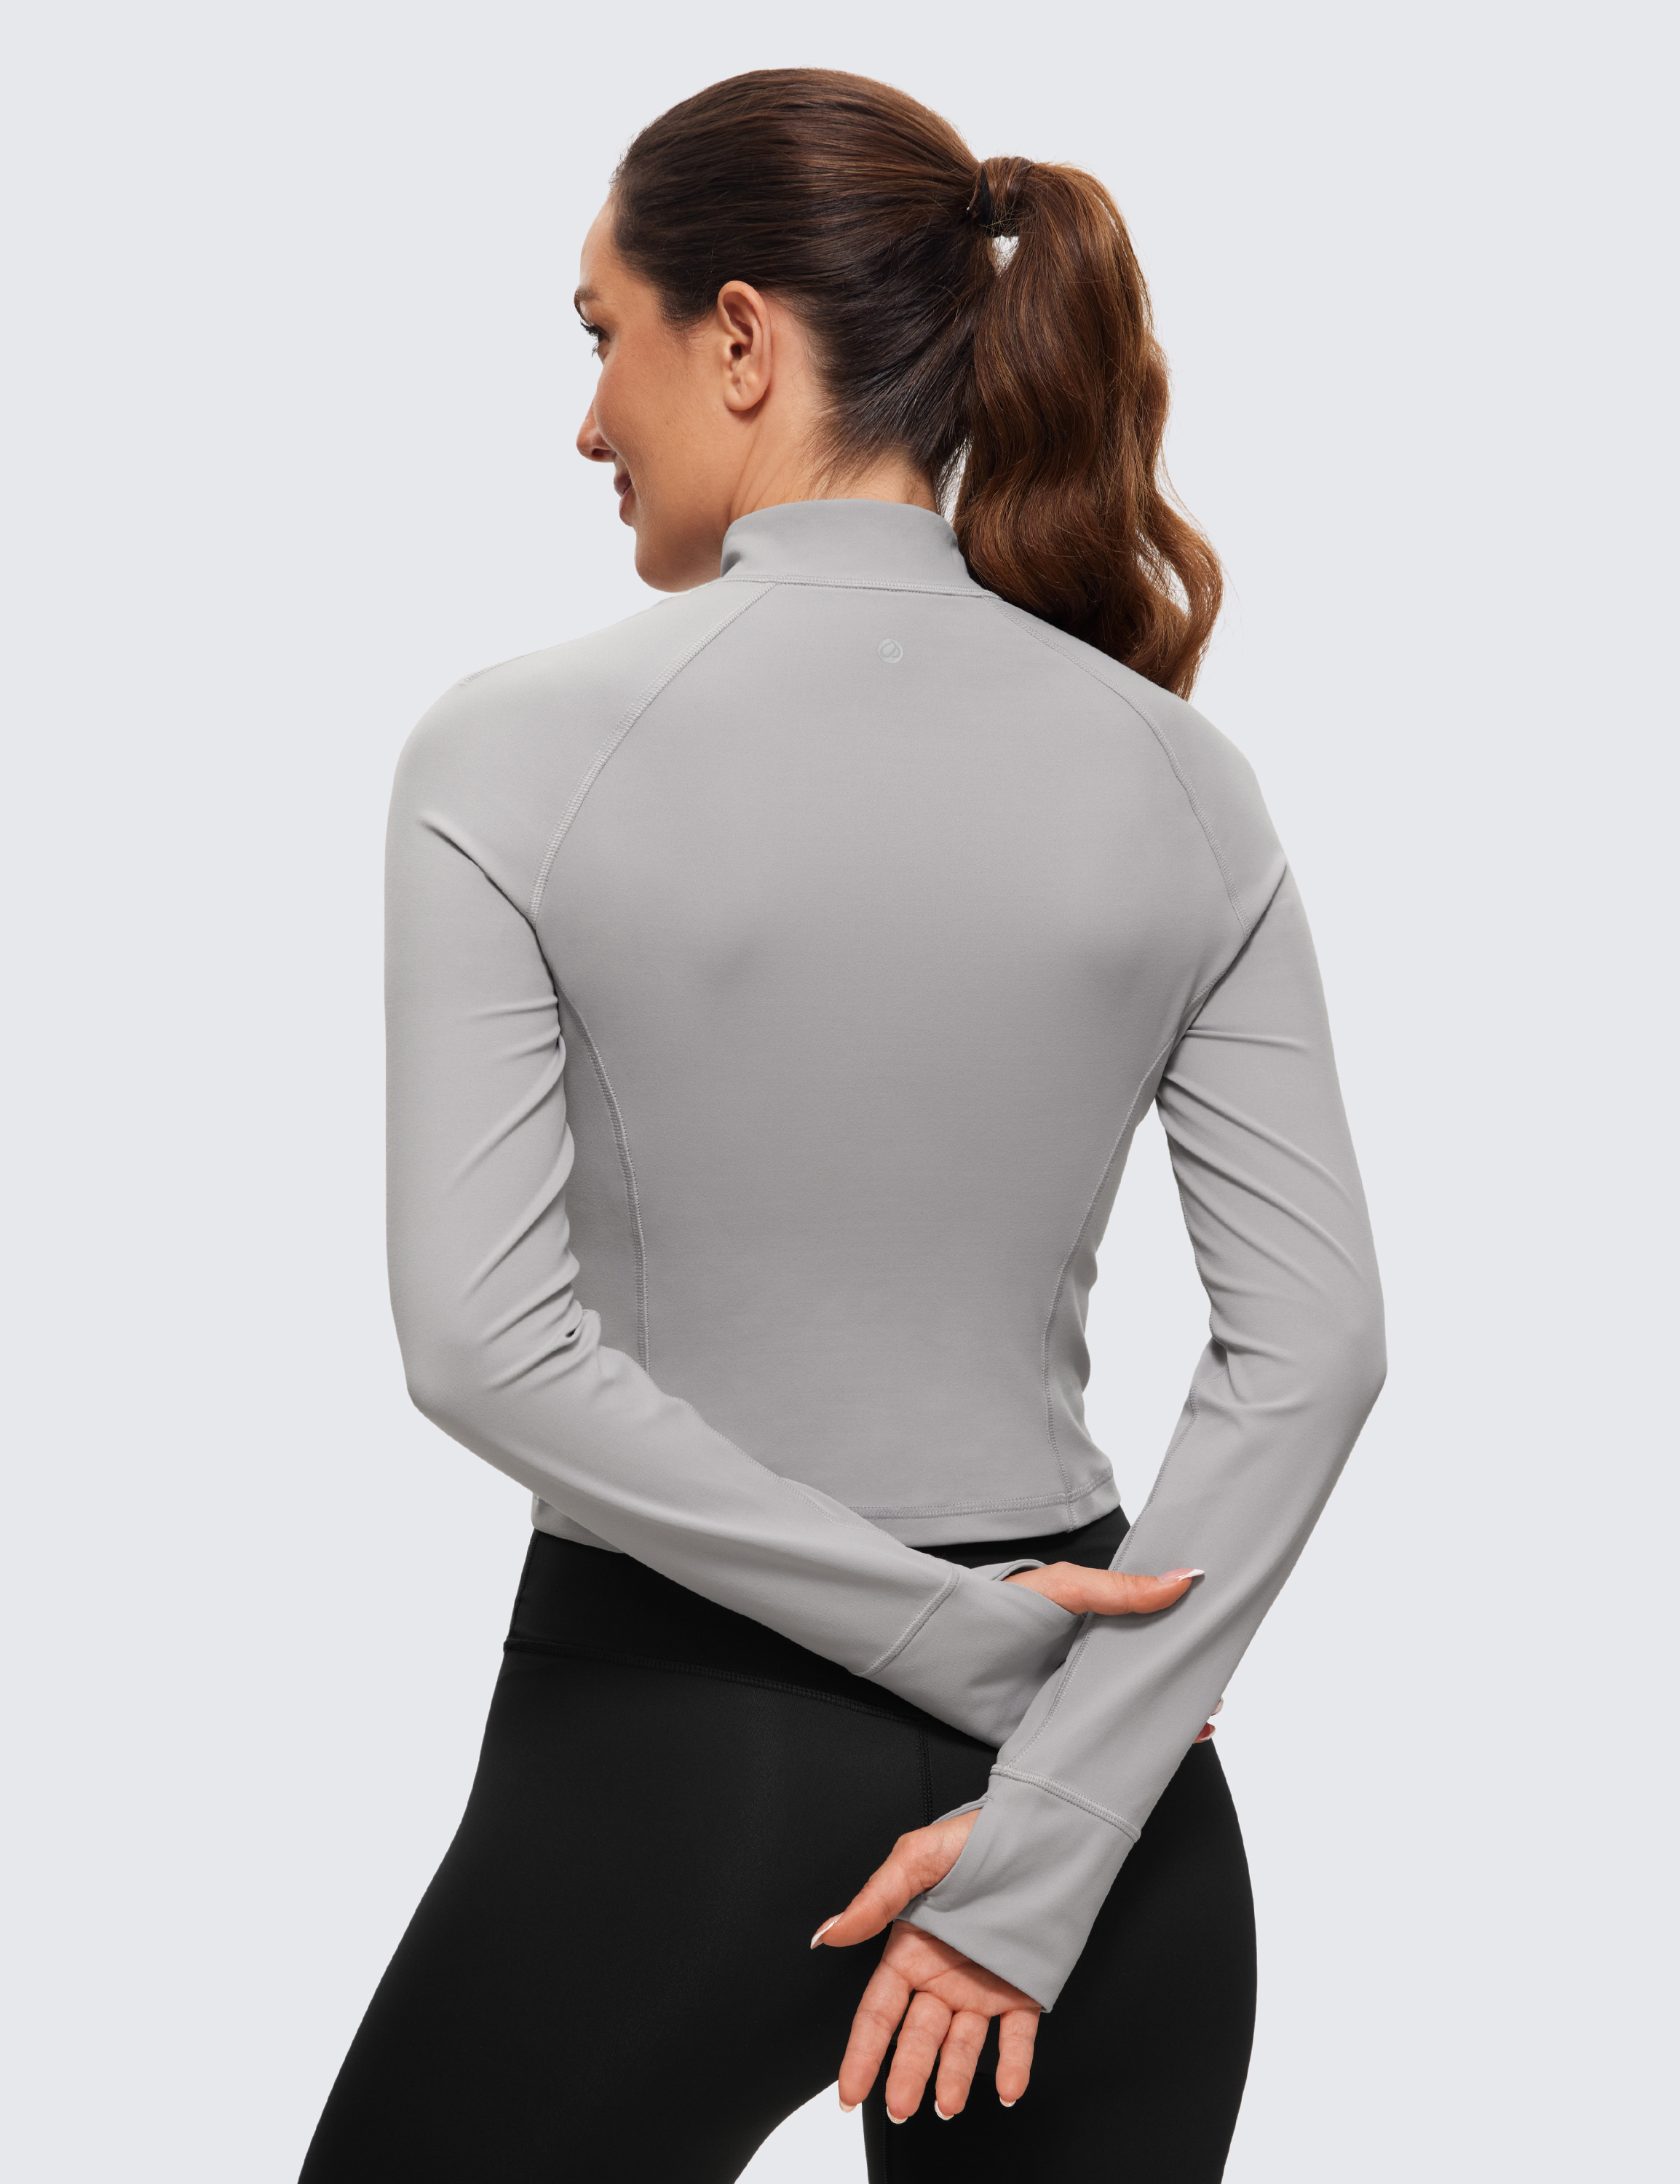 CRZ YOGA Butterluxe Womens Half-Zip Long Sleeve Workout Shirts